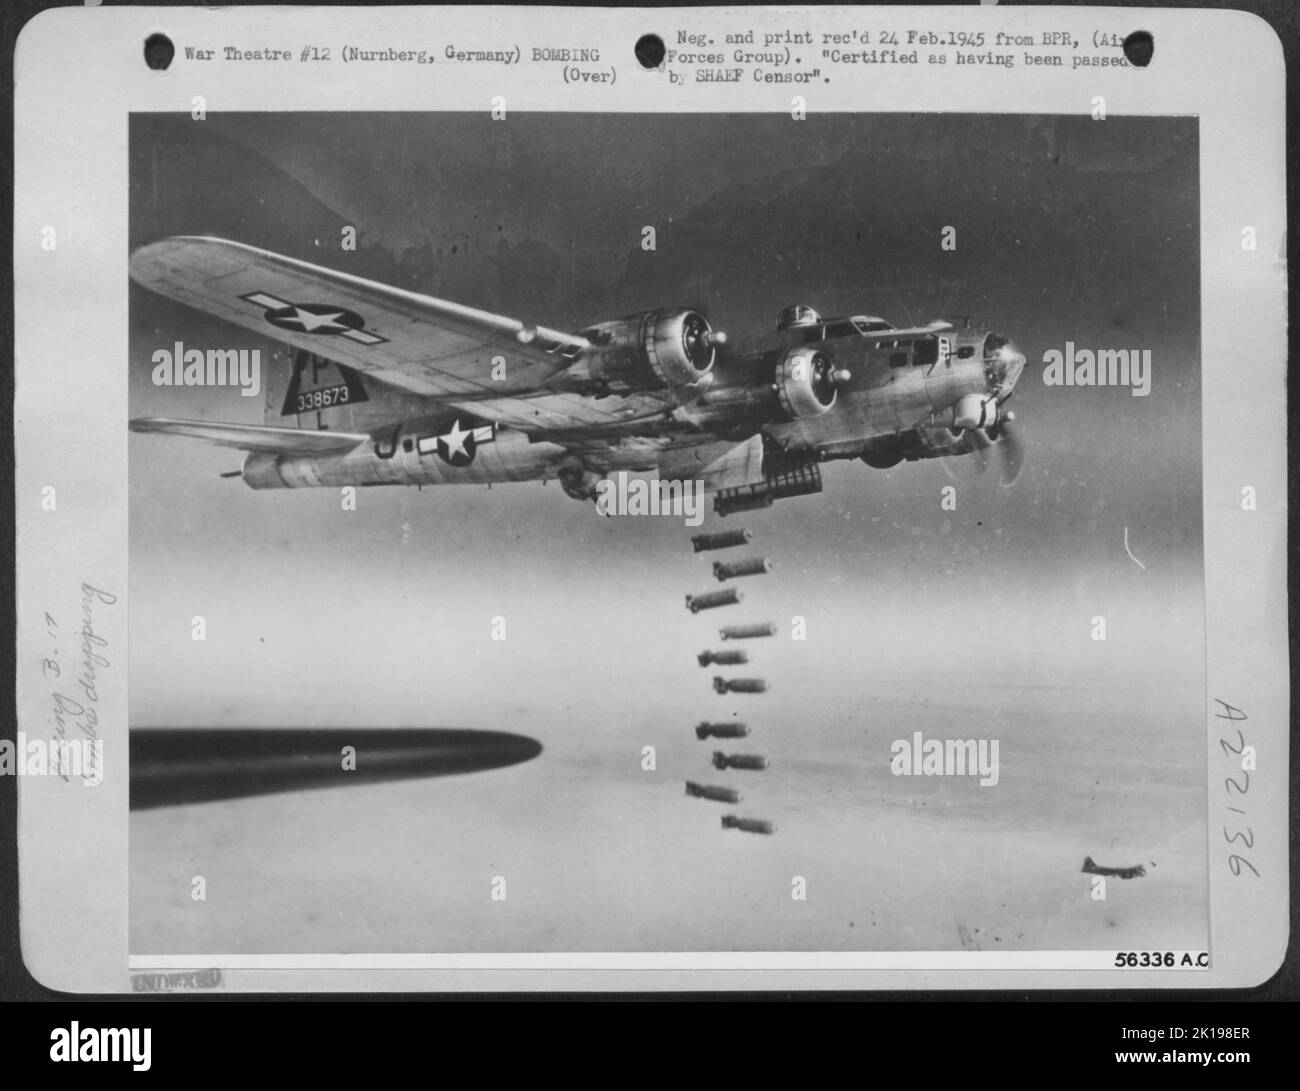 Eine Boeing B-17 Flying Fortress liefert ihre Ladung hochexplosiver und brennender Bomben über die Stadt Nürnberg, Deutschland, während des US 8. AF Angriffs auf die mit Autos verpackten Rangierbahnhöfe, Reparaturwerkstätten und den Hauptbahnhof, 20. Februar 1945. Die Meisten Stockfoto